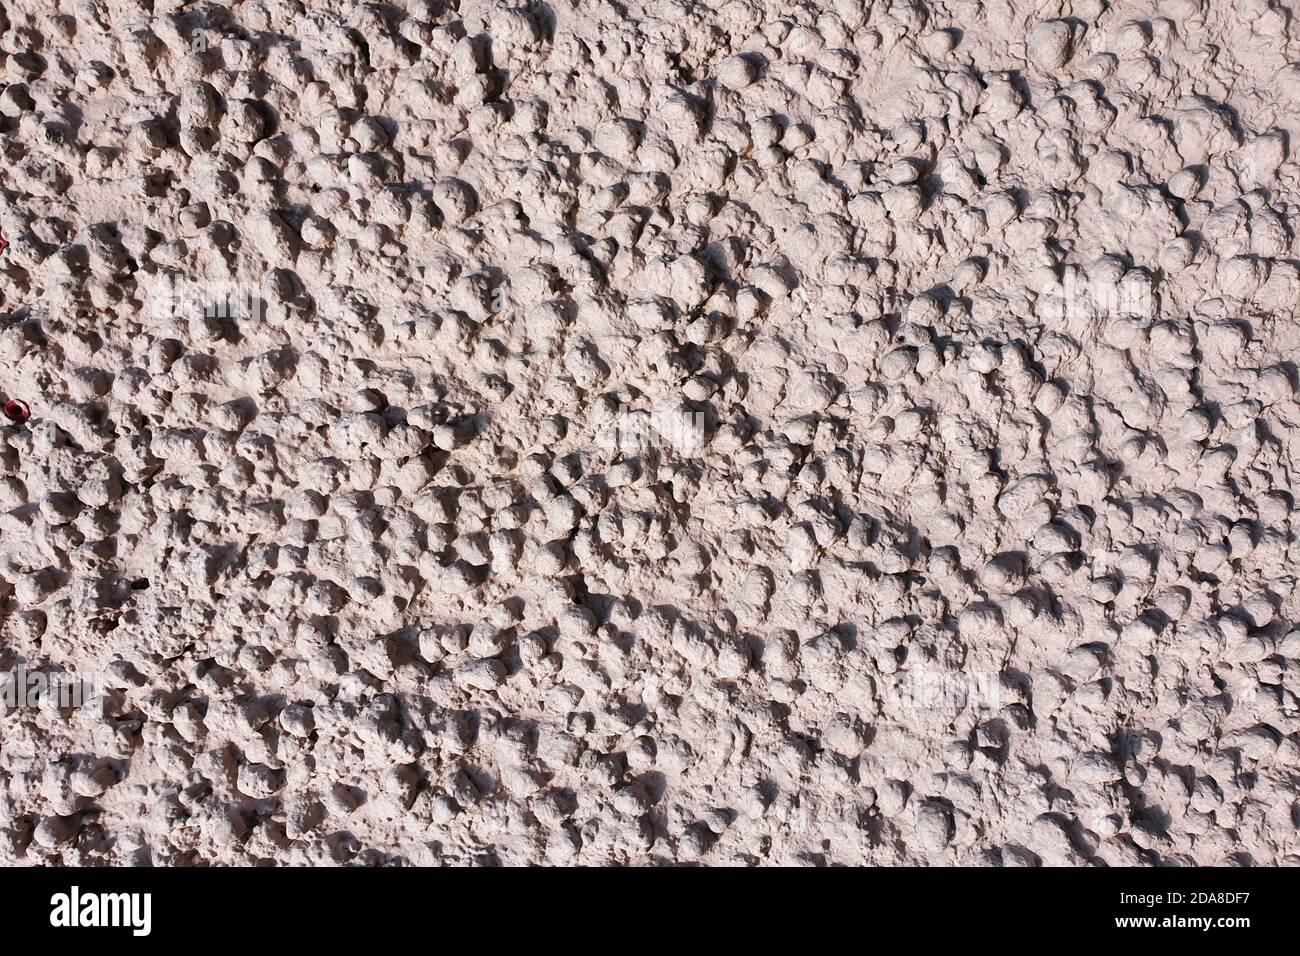 Blähton Beton Textur. Hellrosa Reliefputz, bestehend aus Blähton-Steinen. Abstrakter Hintergrund. Stockfoto